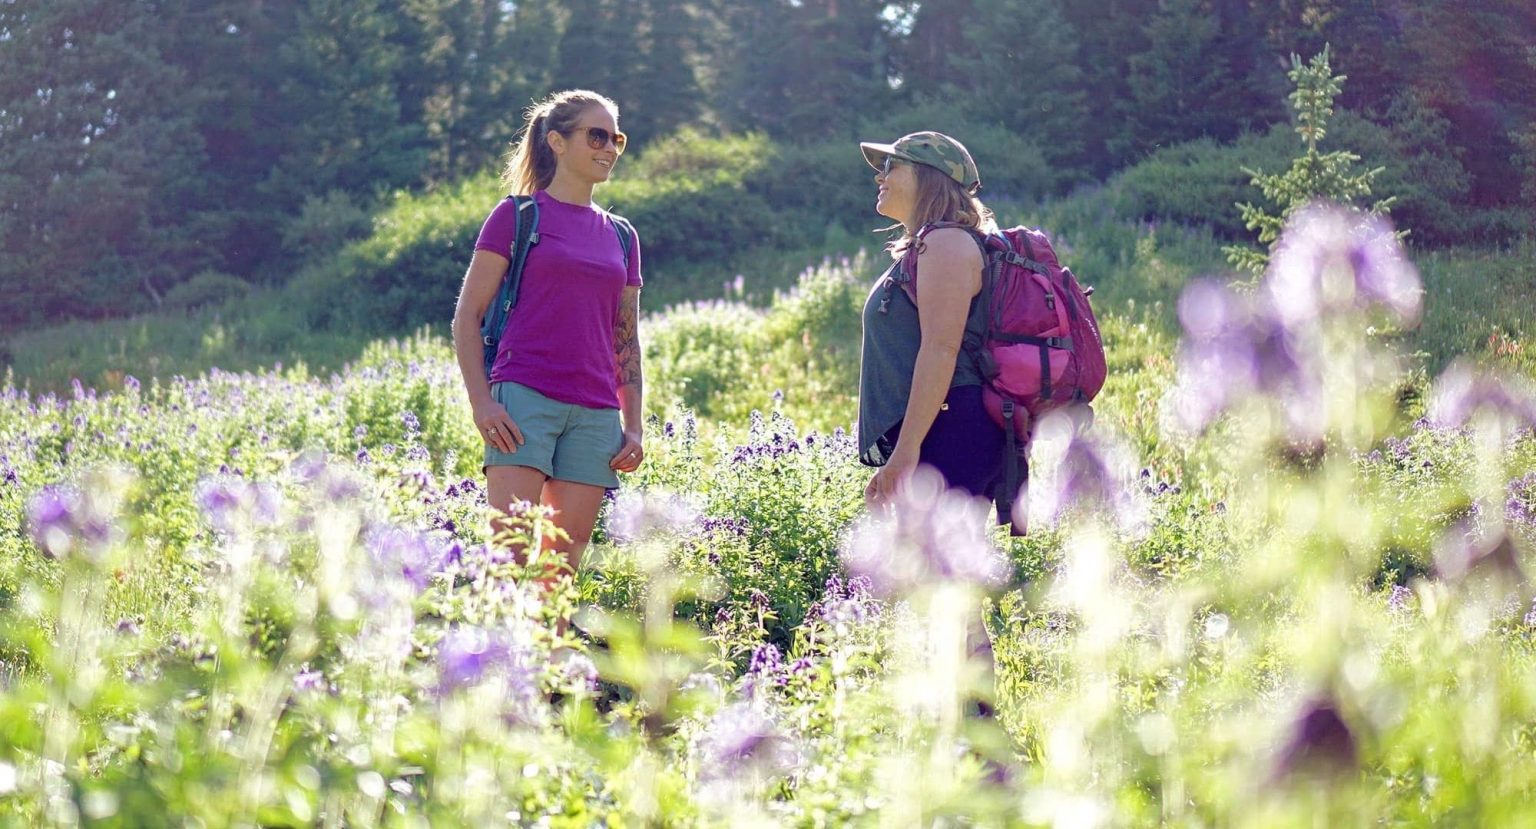 Two women talking in wildflowers - photo by Louie Traub